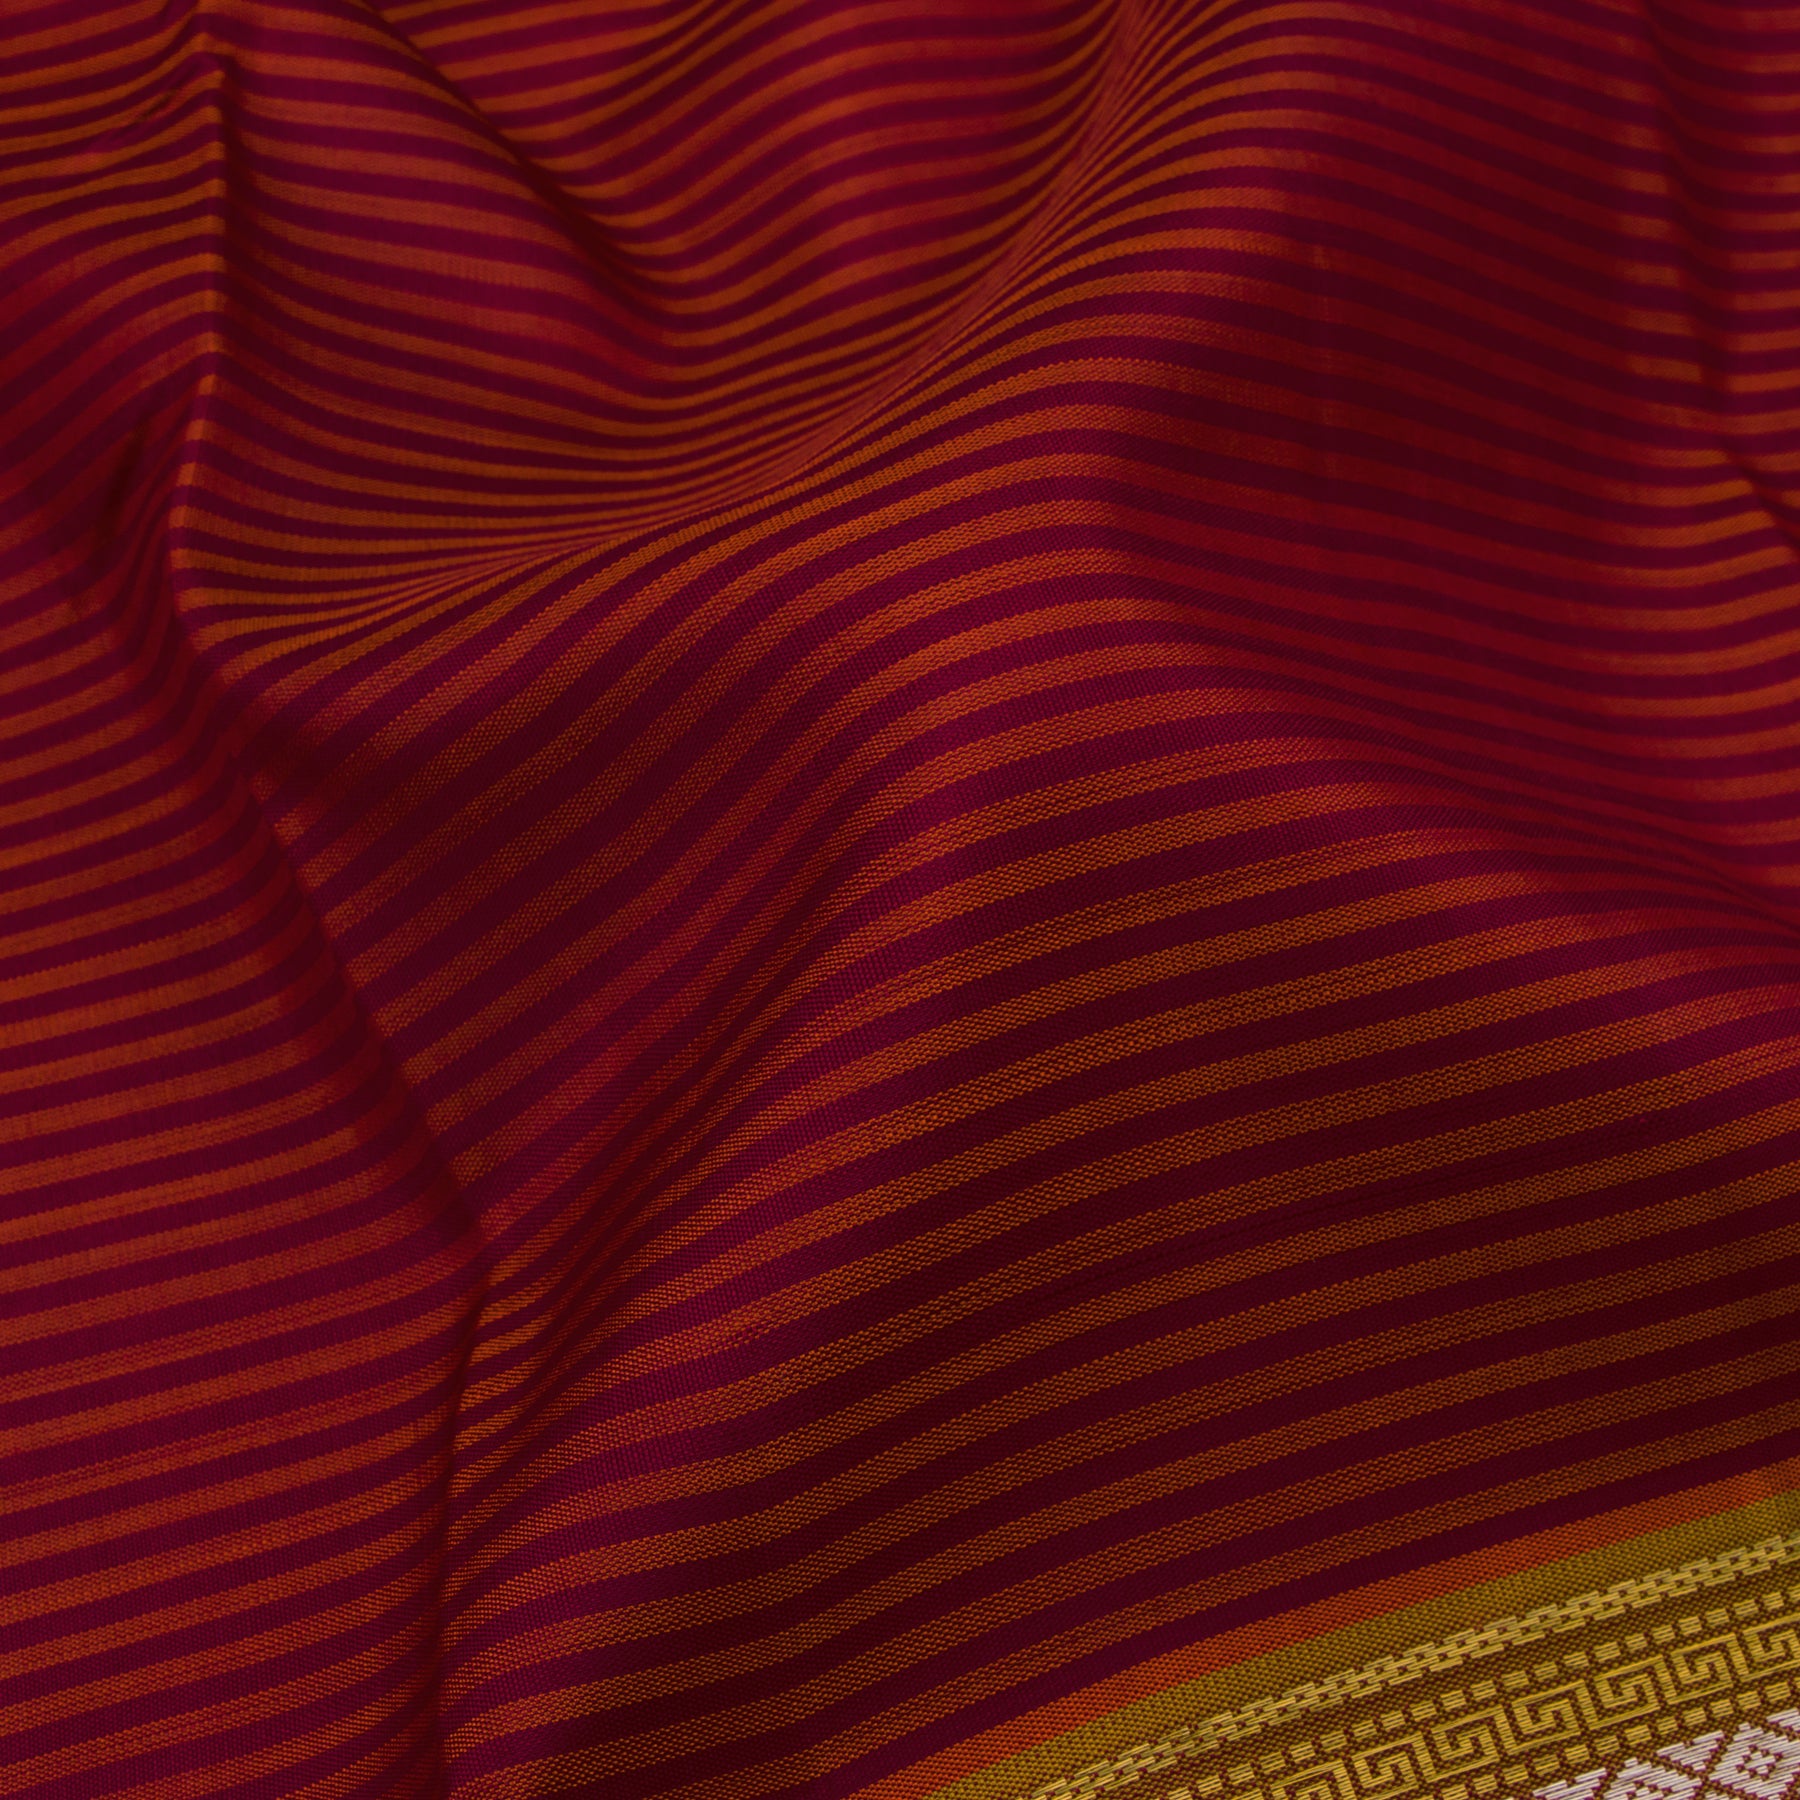 Kanakavalli Kanjivaram Silk Sari 20-100-HS001-01916 - Fabric View